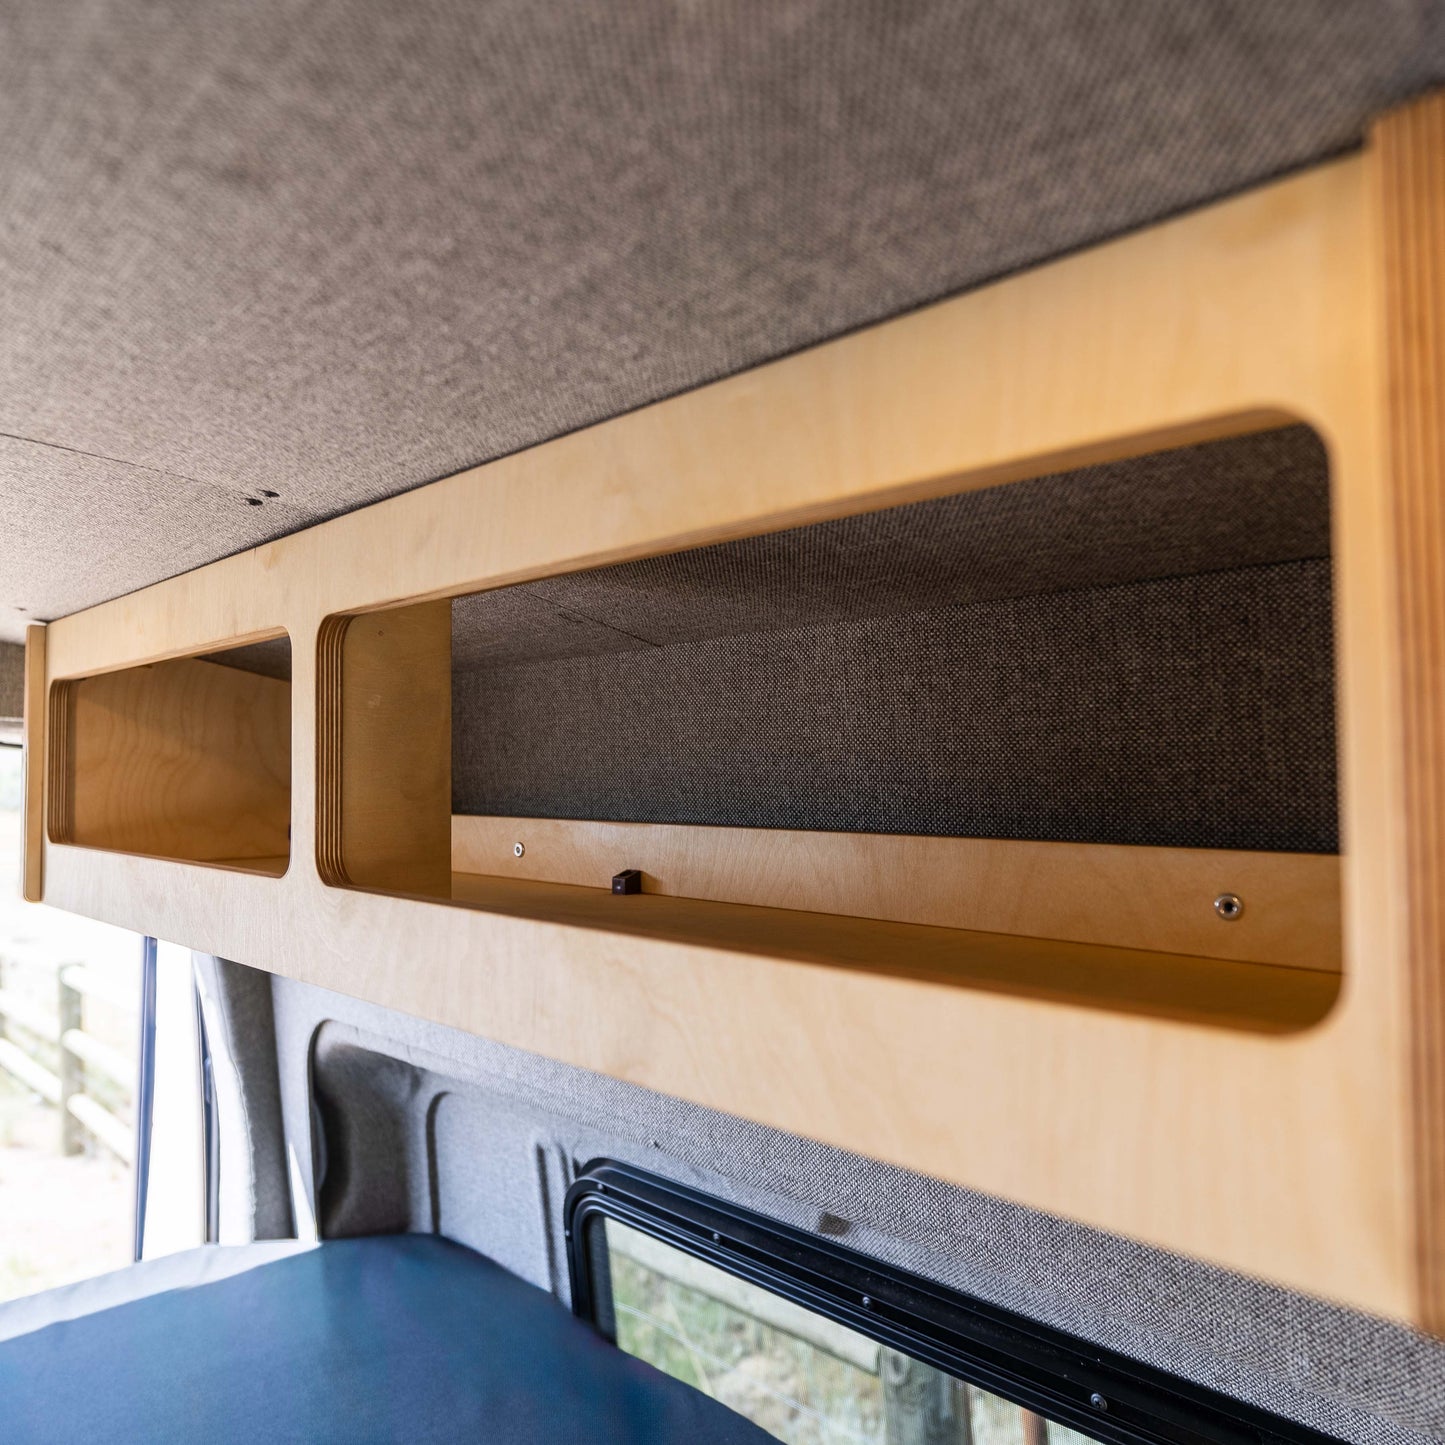 DIY Overhead Shelf Kit for Sprinter Vans